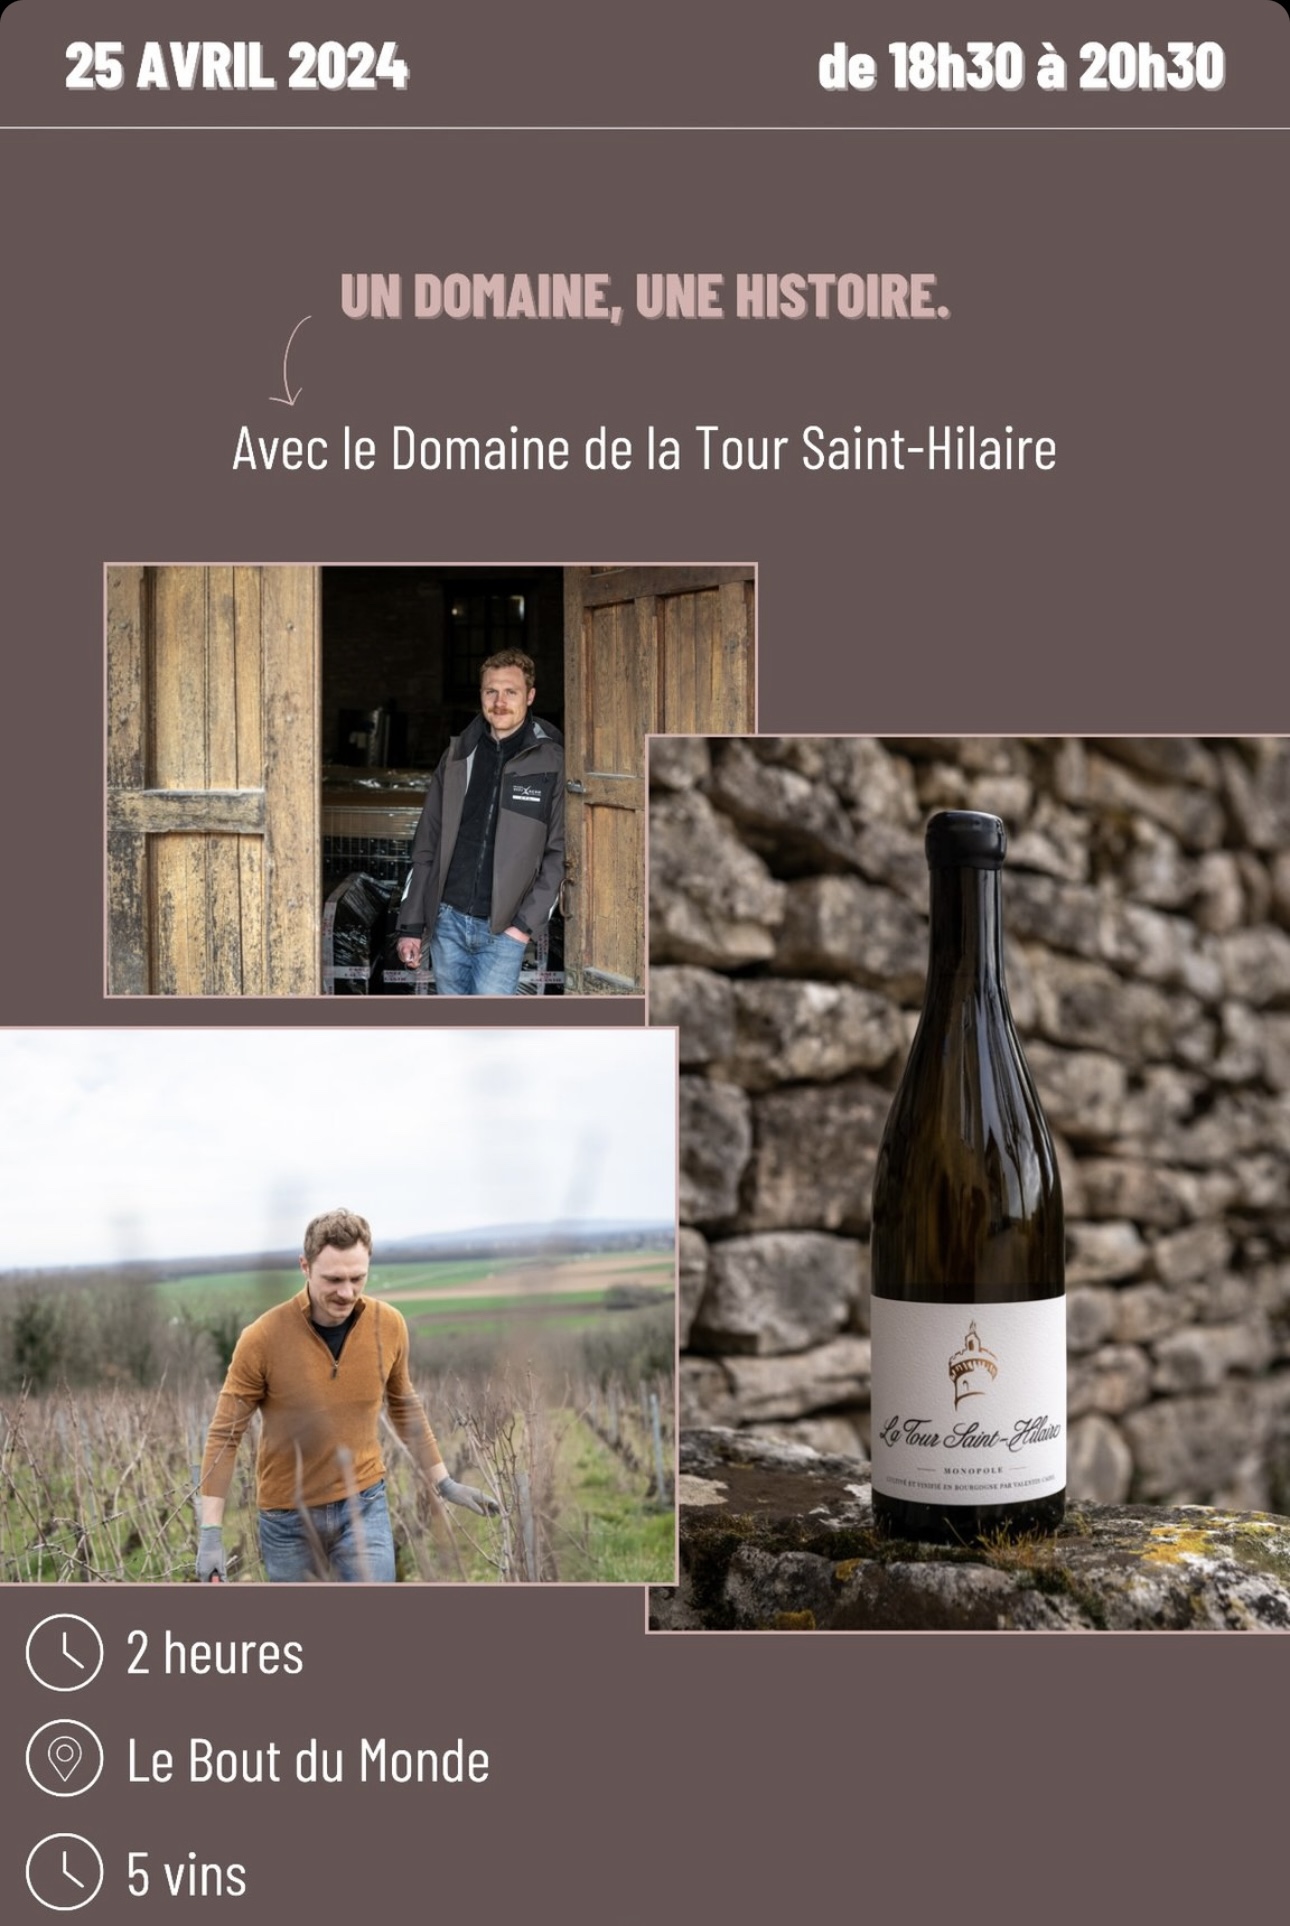 Un domaine une histoire La Tour Saint-Hilaire